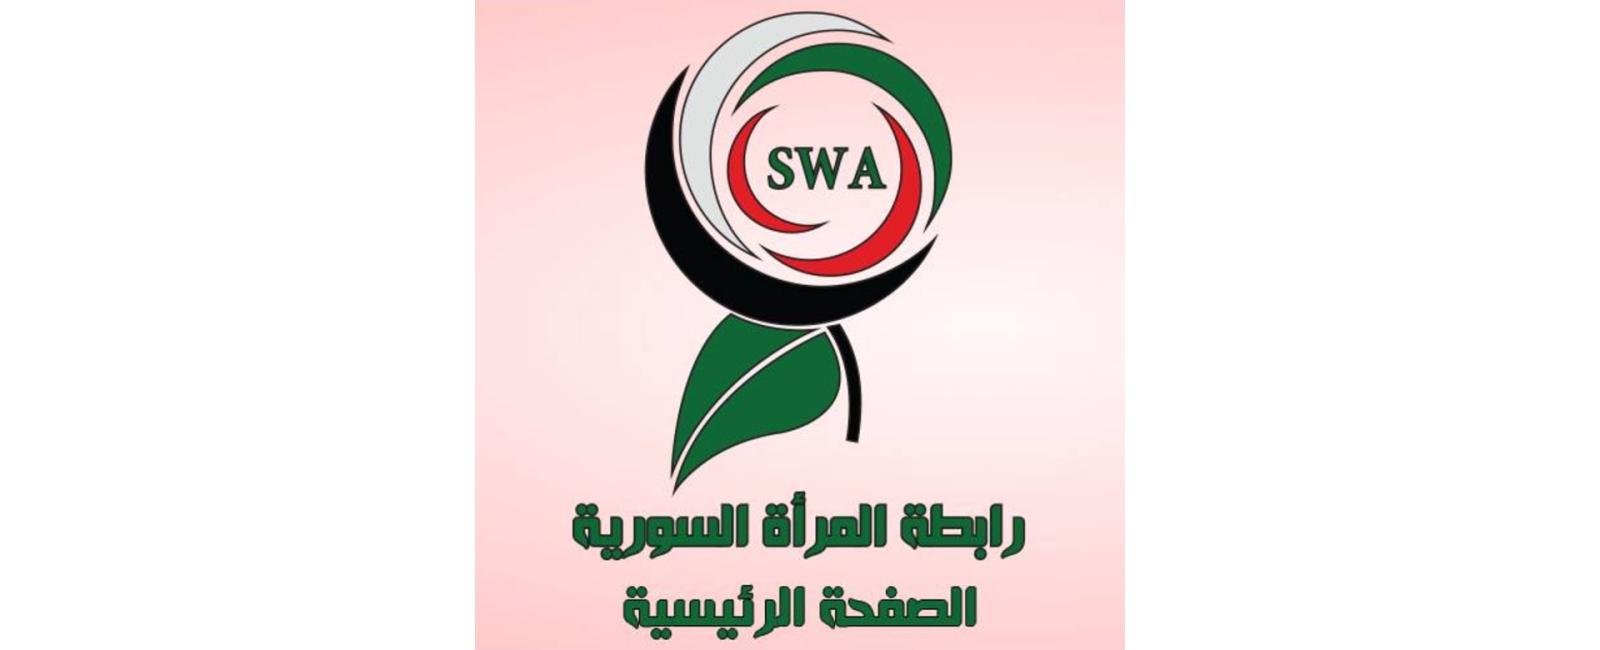 رابطة المرأة السورية SWA  - انطاكيا